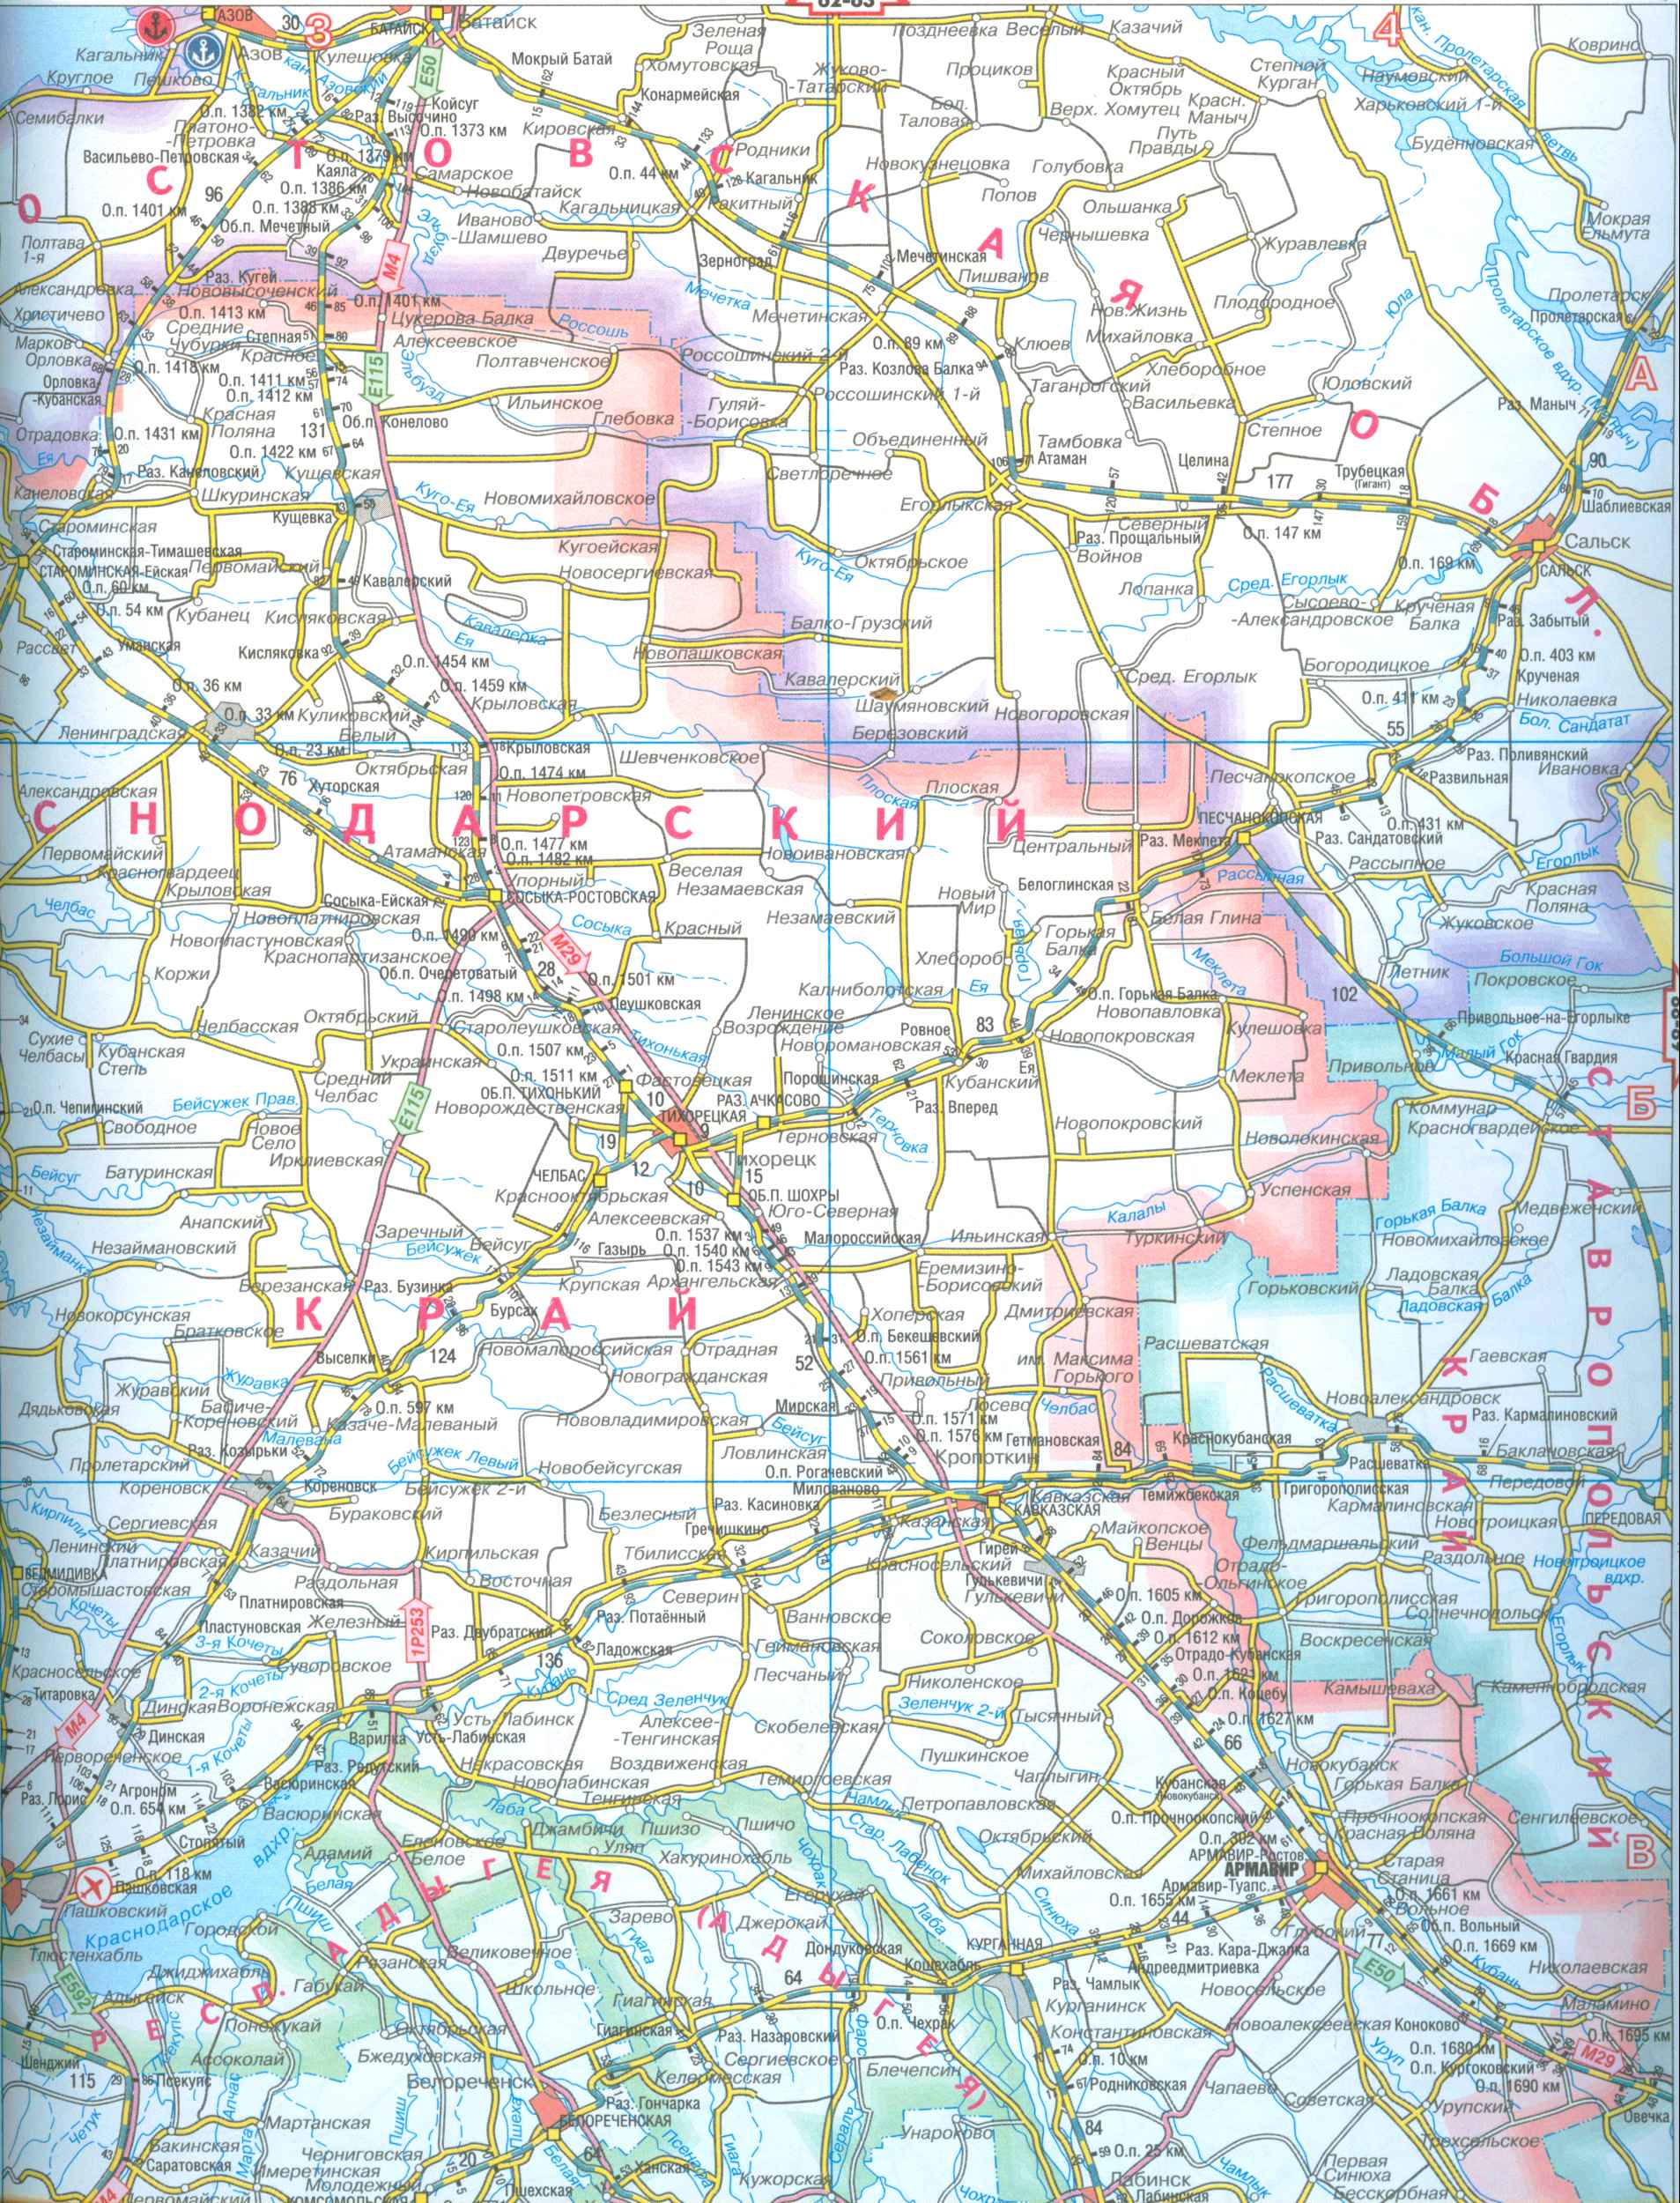 Карта Краснодарского края. Карта железных дорог и автодорог Краснодарского края, B0 - 